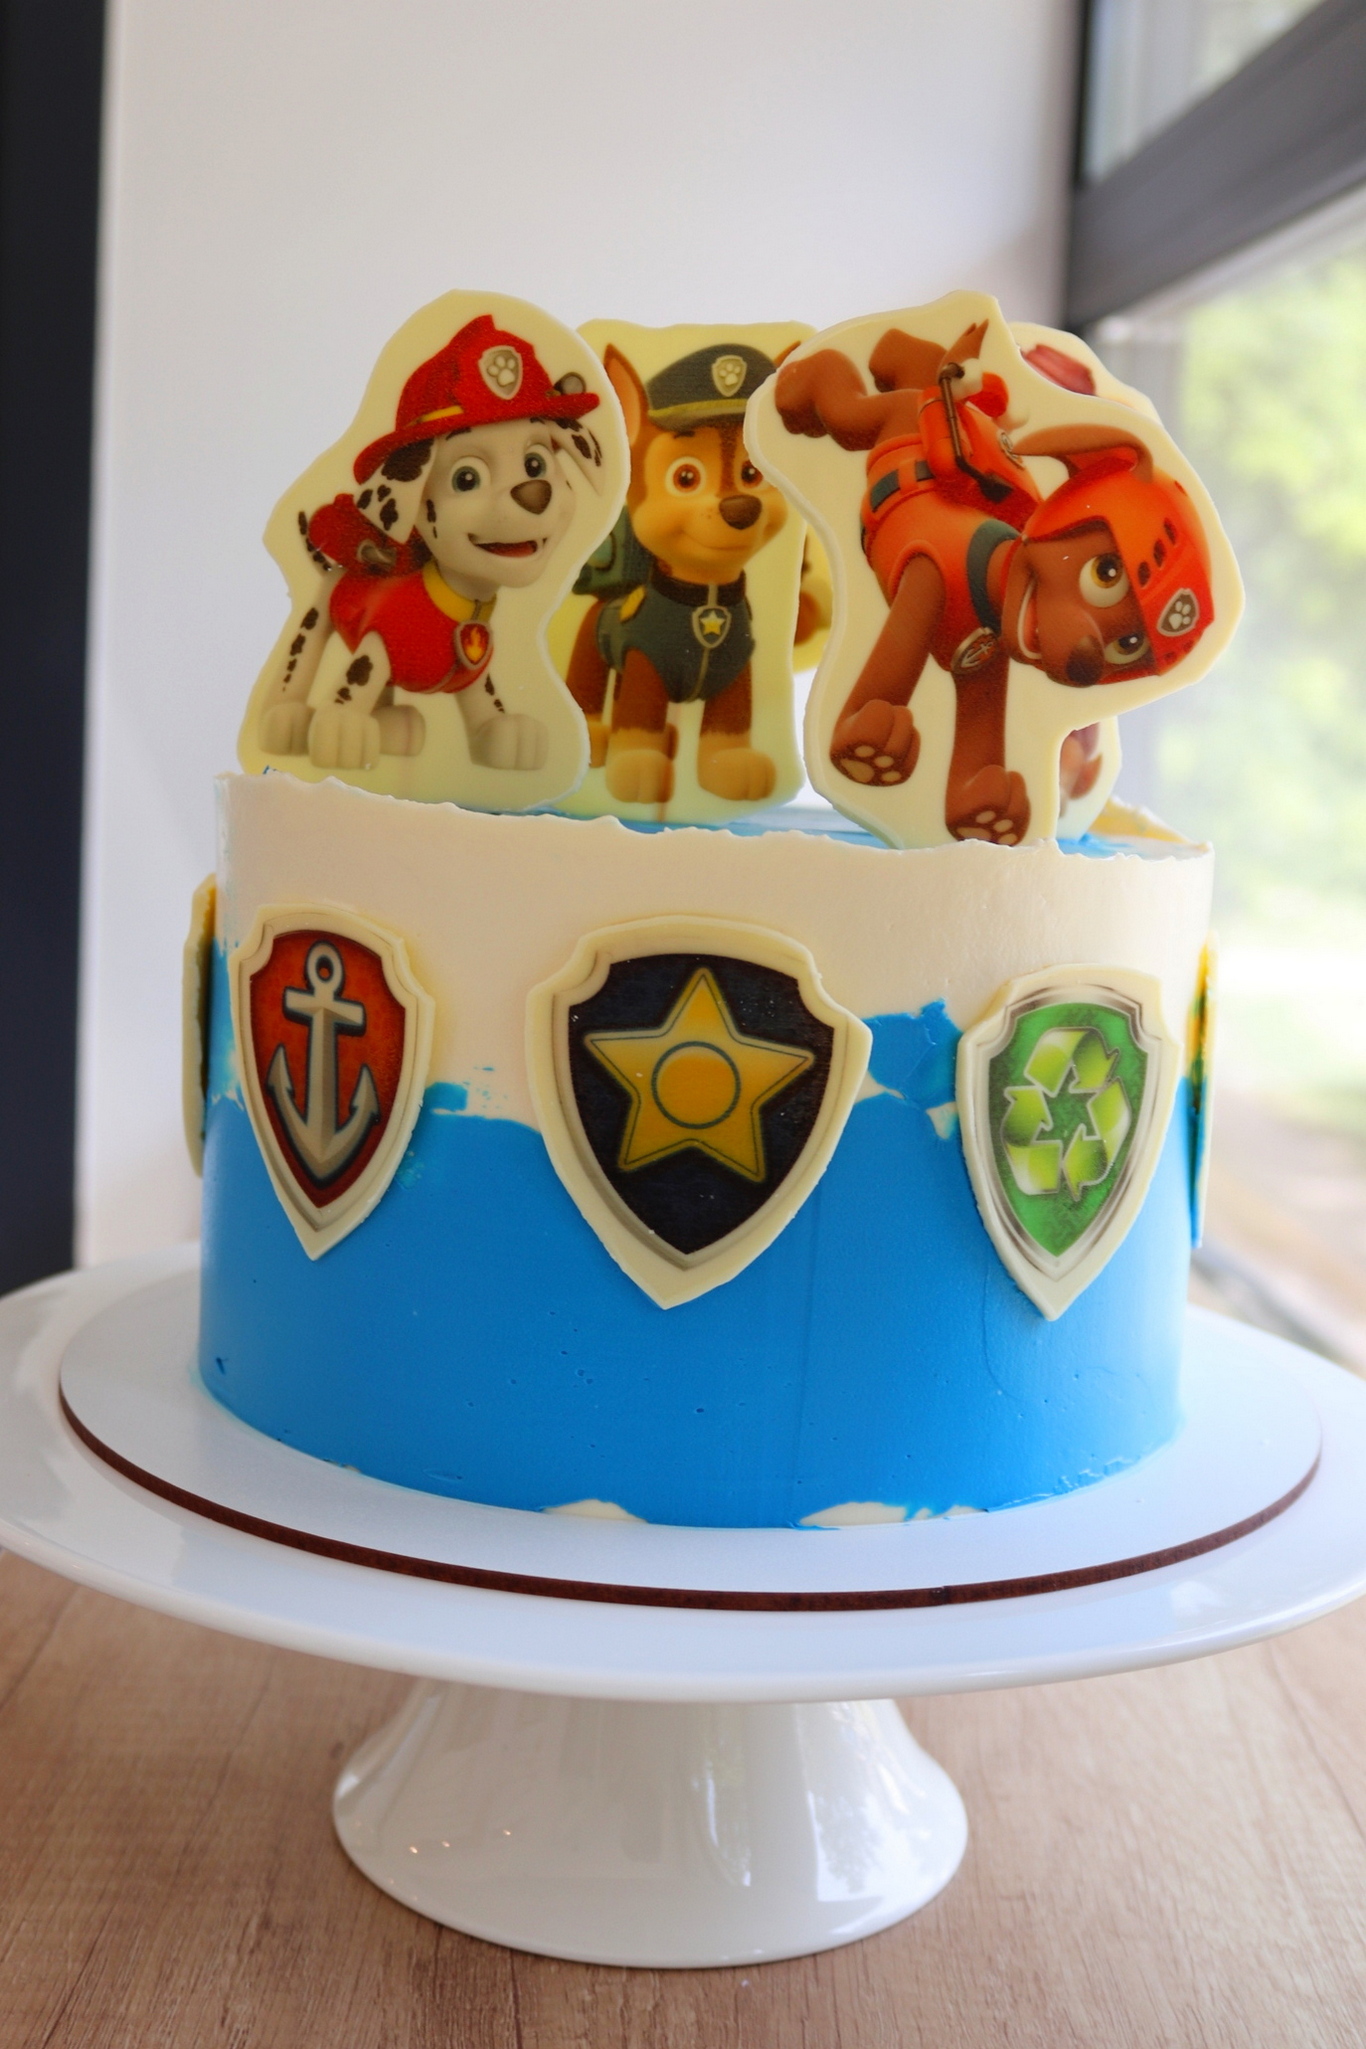 Потрясающий торт украшен персонажами из мультфильма Щенячий патруль